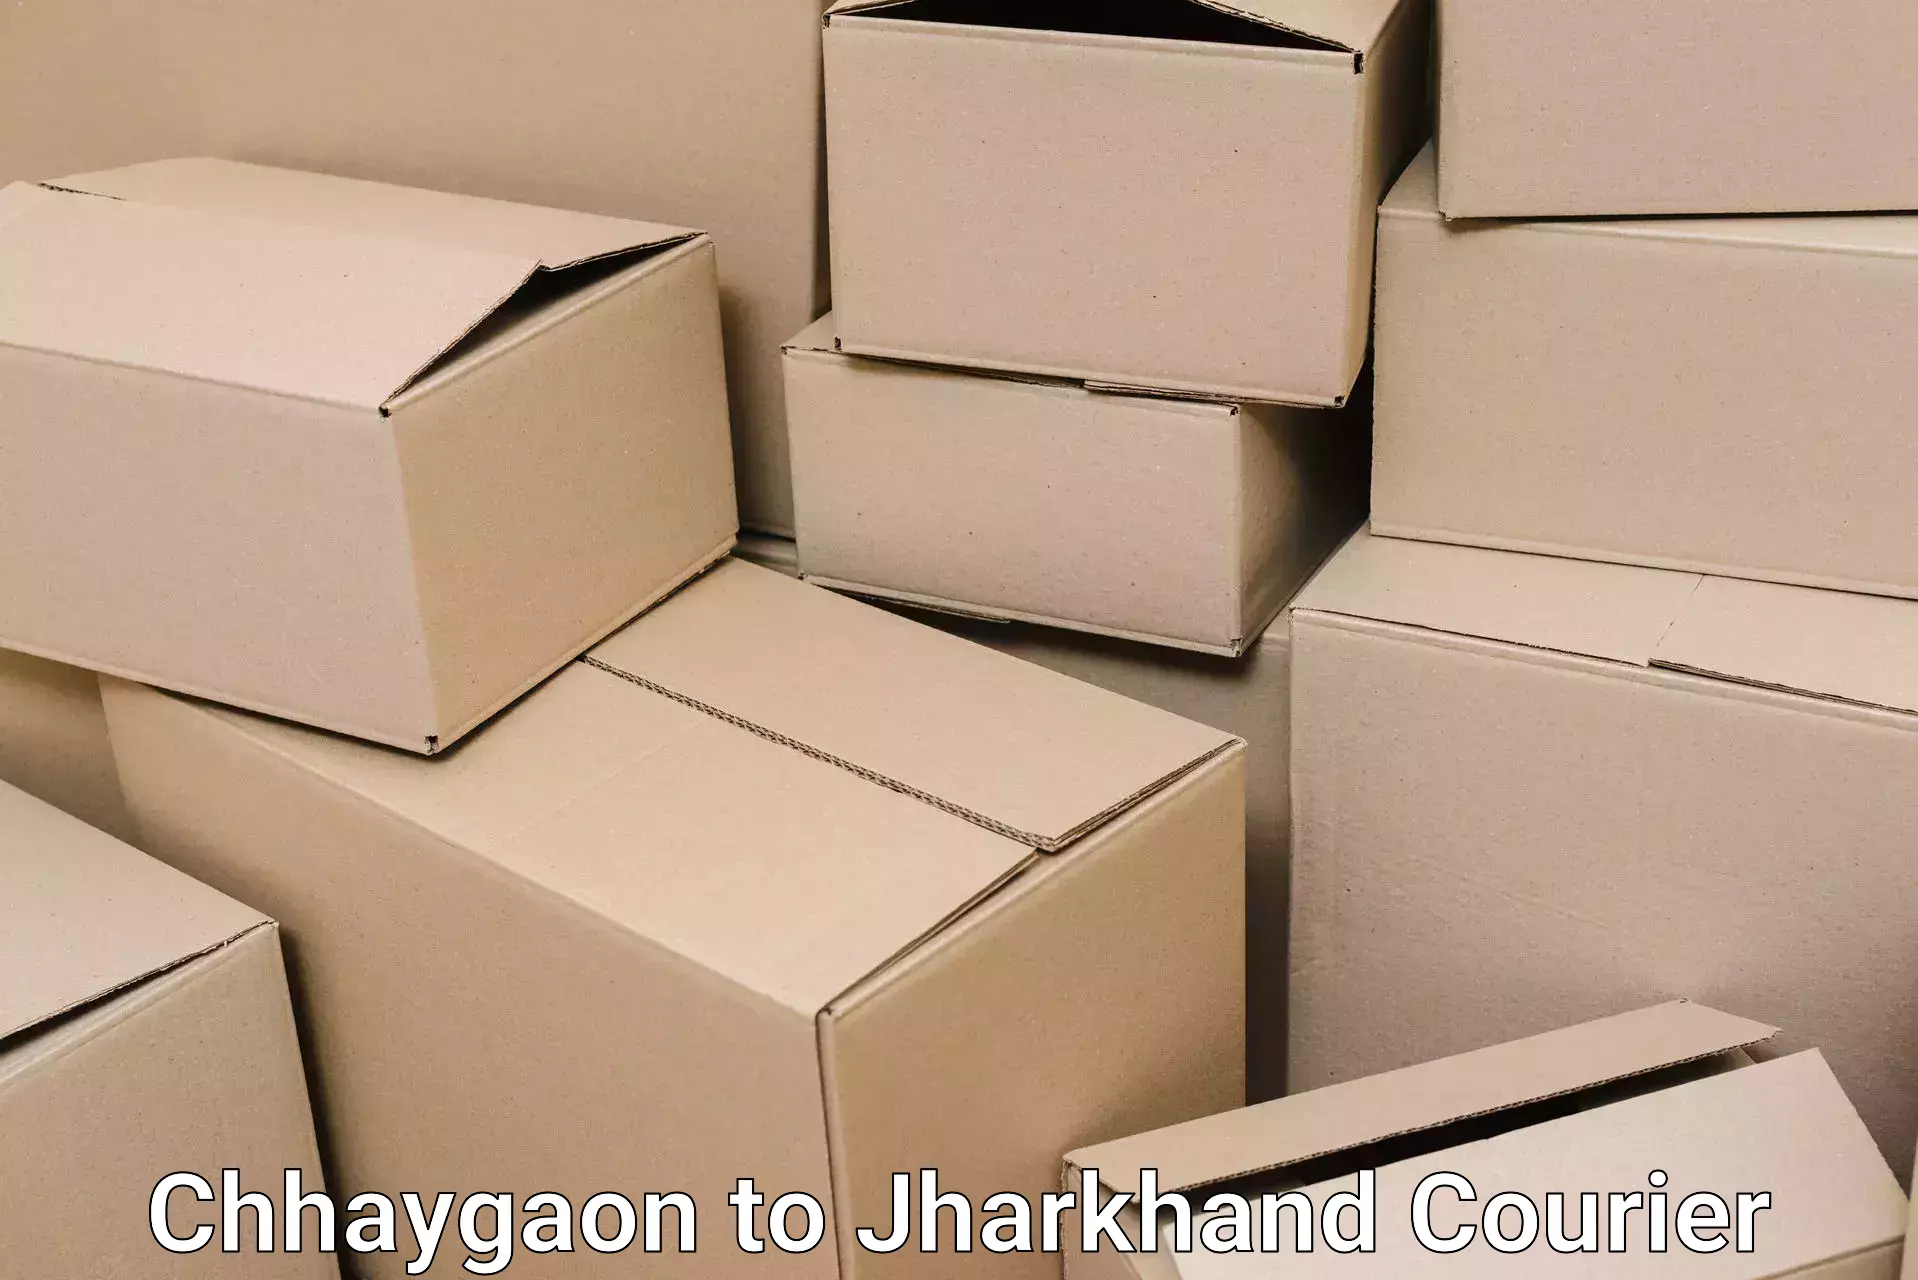 Efficient moving company Chhaygaon to Doranda